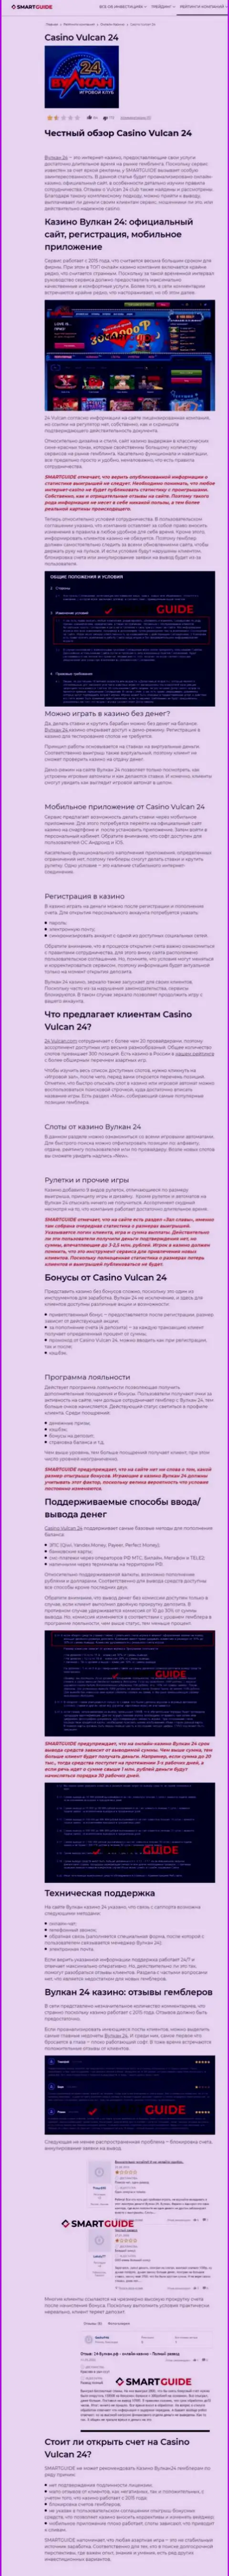 Вулкан-24 Ком - компания, зарабатывающая на воровстве денежных средств реальных клиентов (обзор)